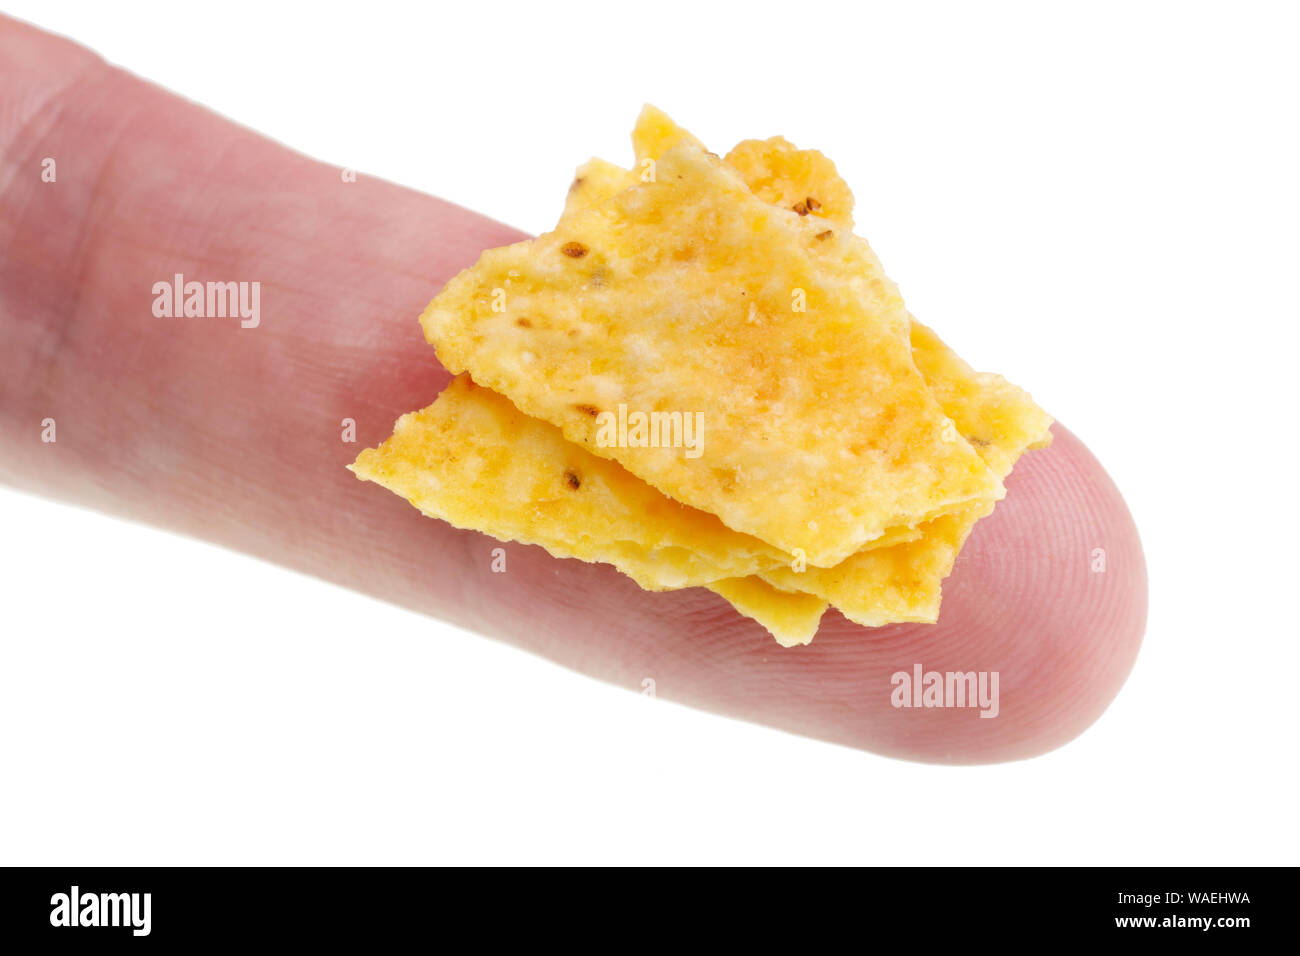 In futuro potremo mangiare questo concetto - piccolo brutto male potato chips briciole sul dito. Isolato su bianco studio macro Foto Stock